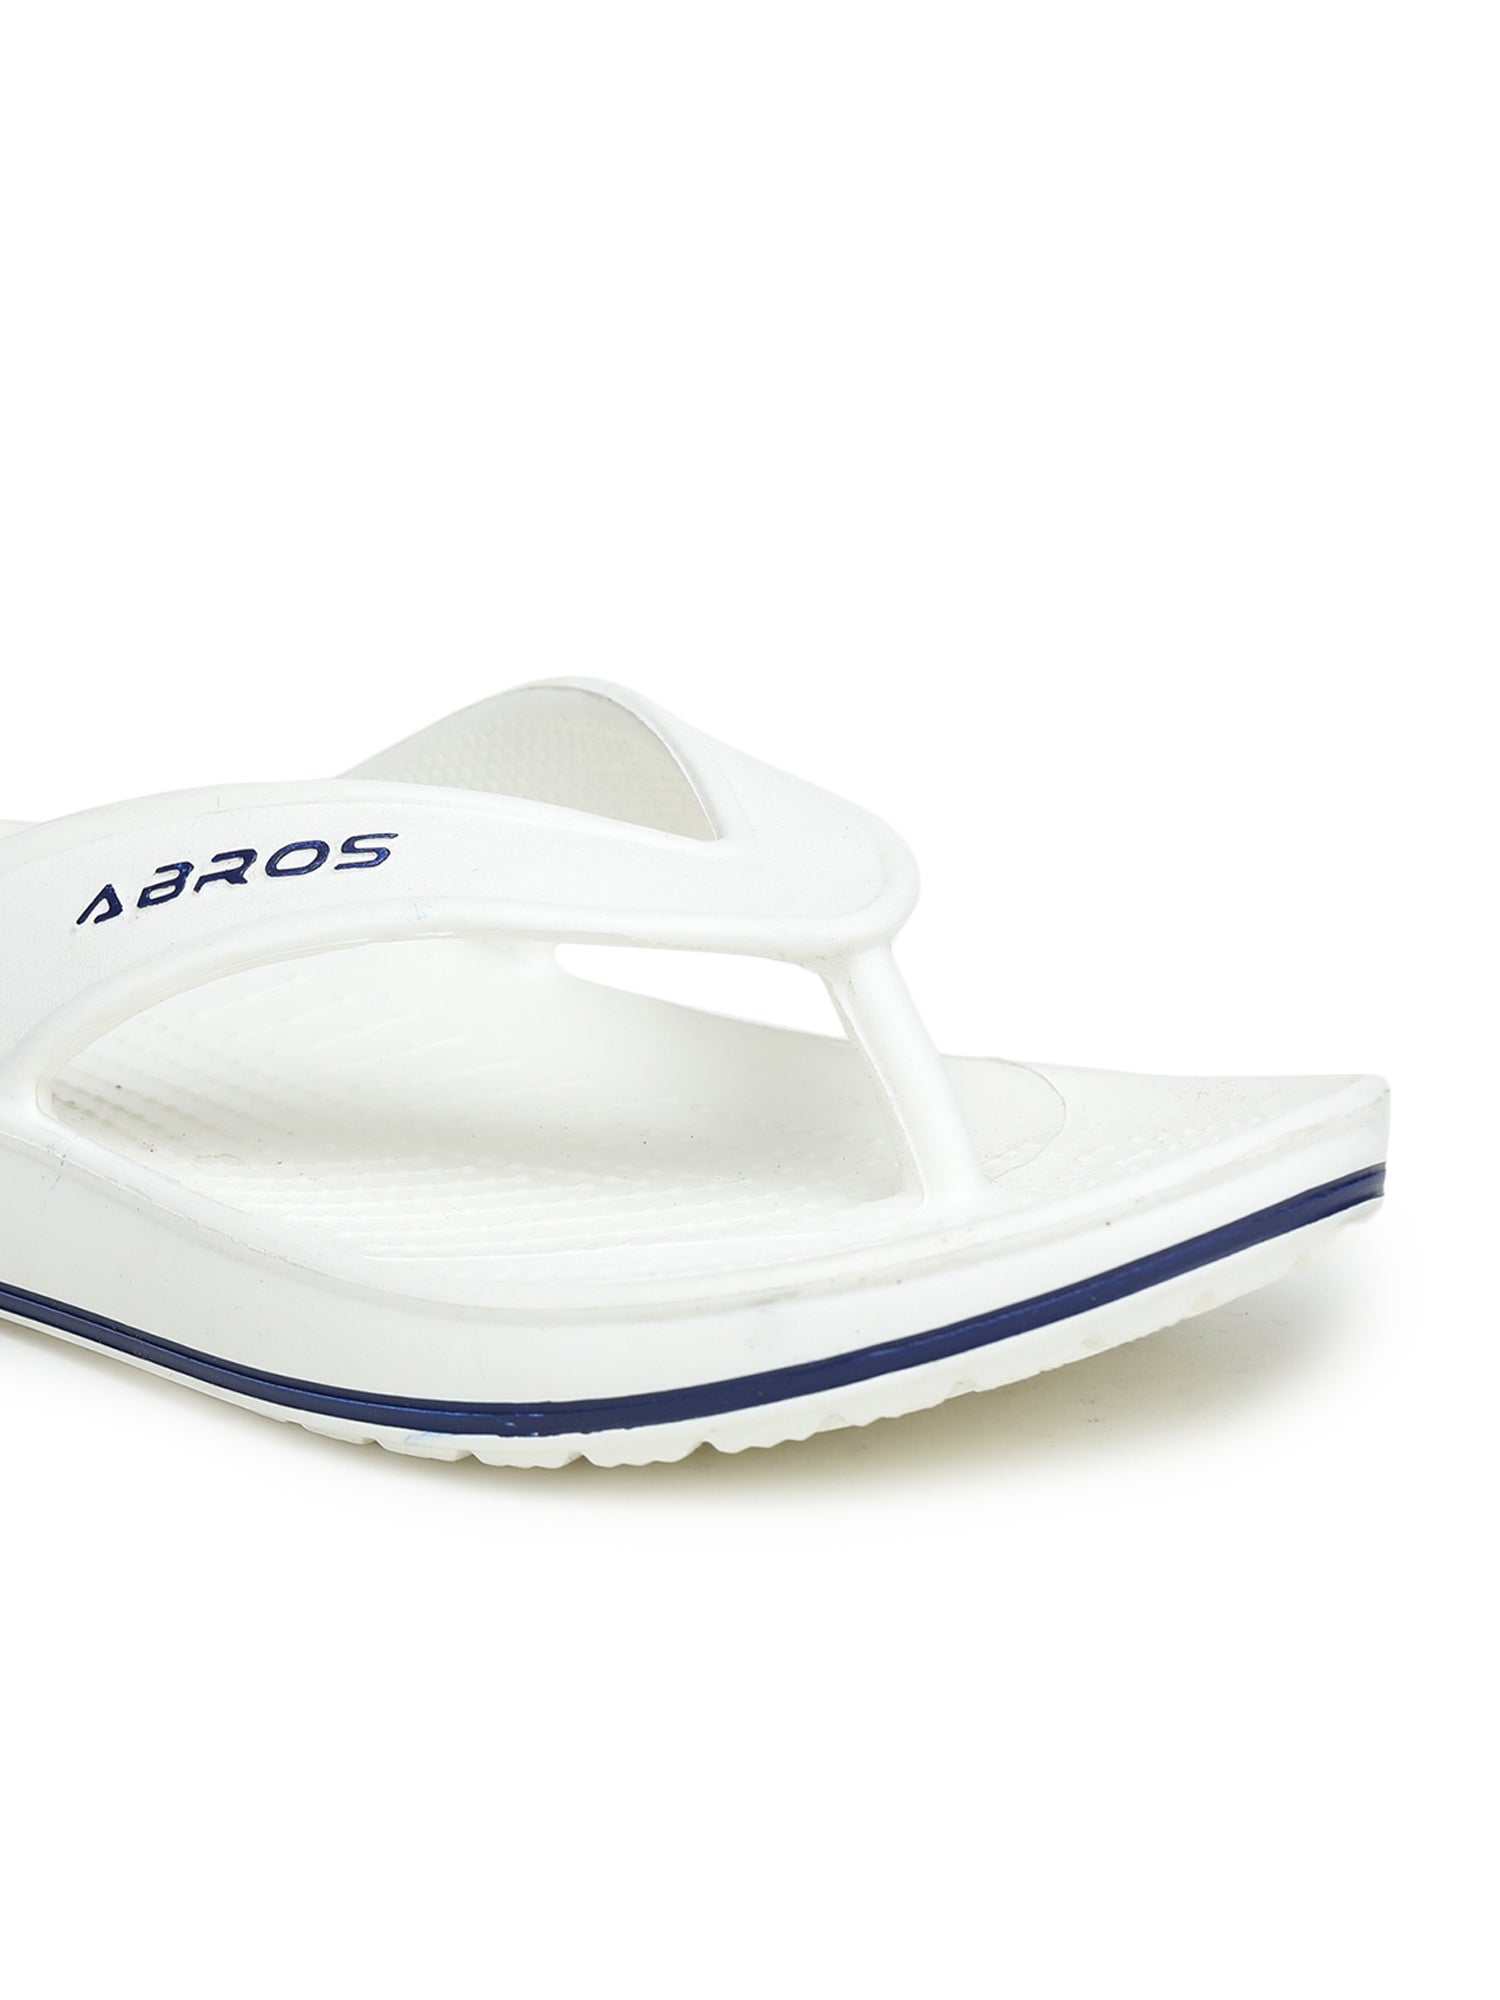 ABROS ZVG-0402 Slipper For MEN'S